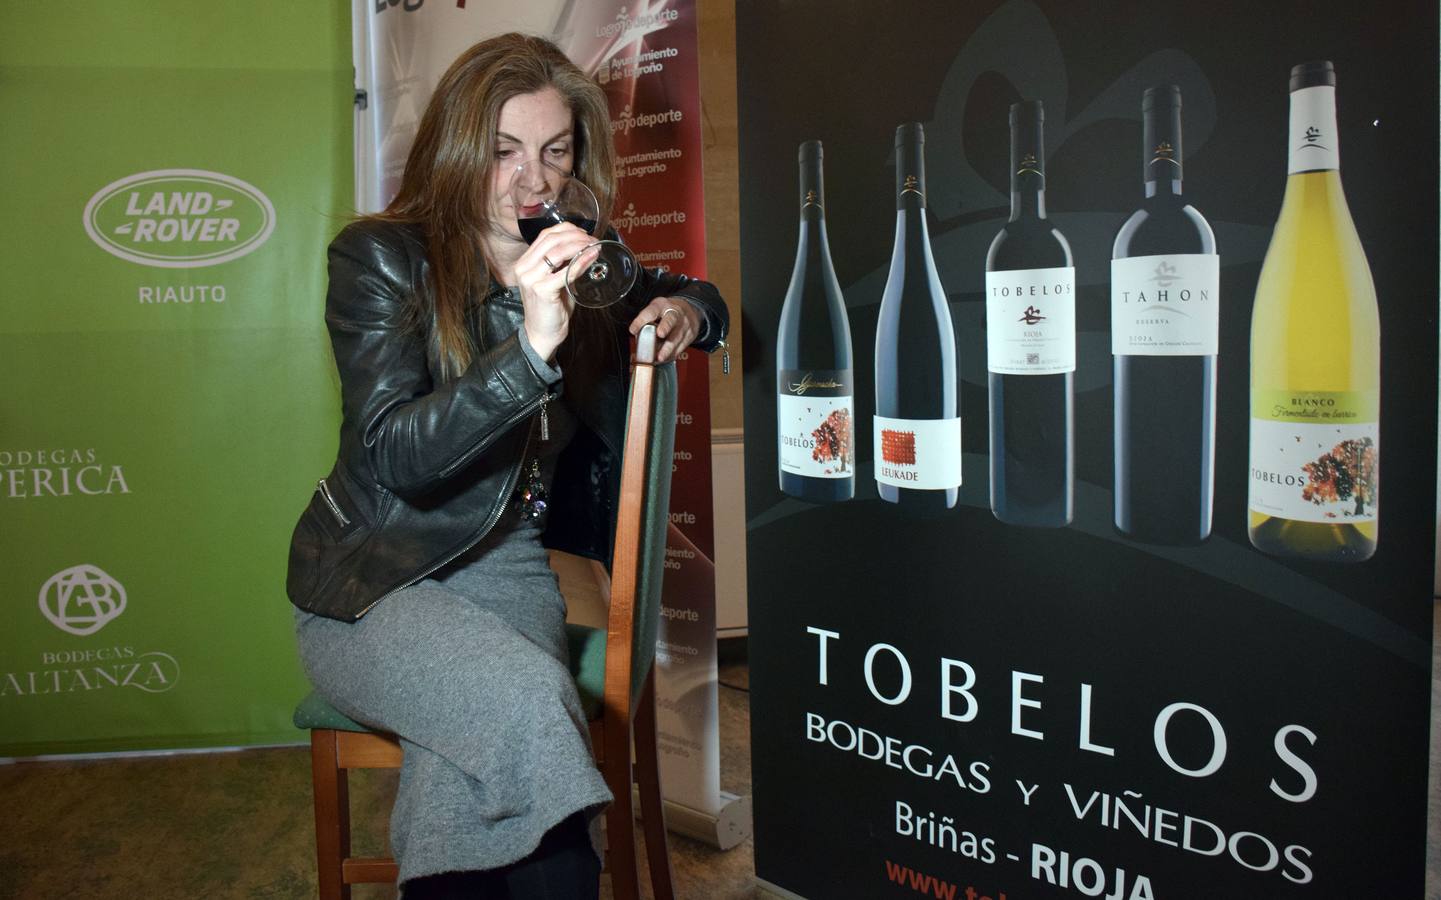 Tras la jornada de juego se puedo disfrutar de la cata de dos vinos de Bodegas Tobelos.